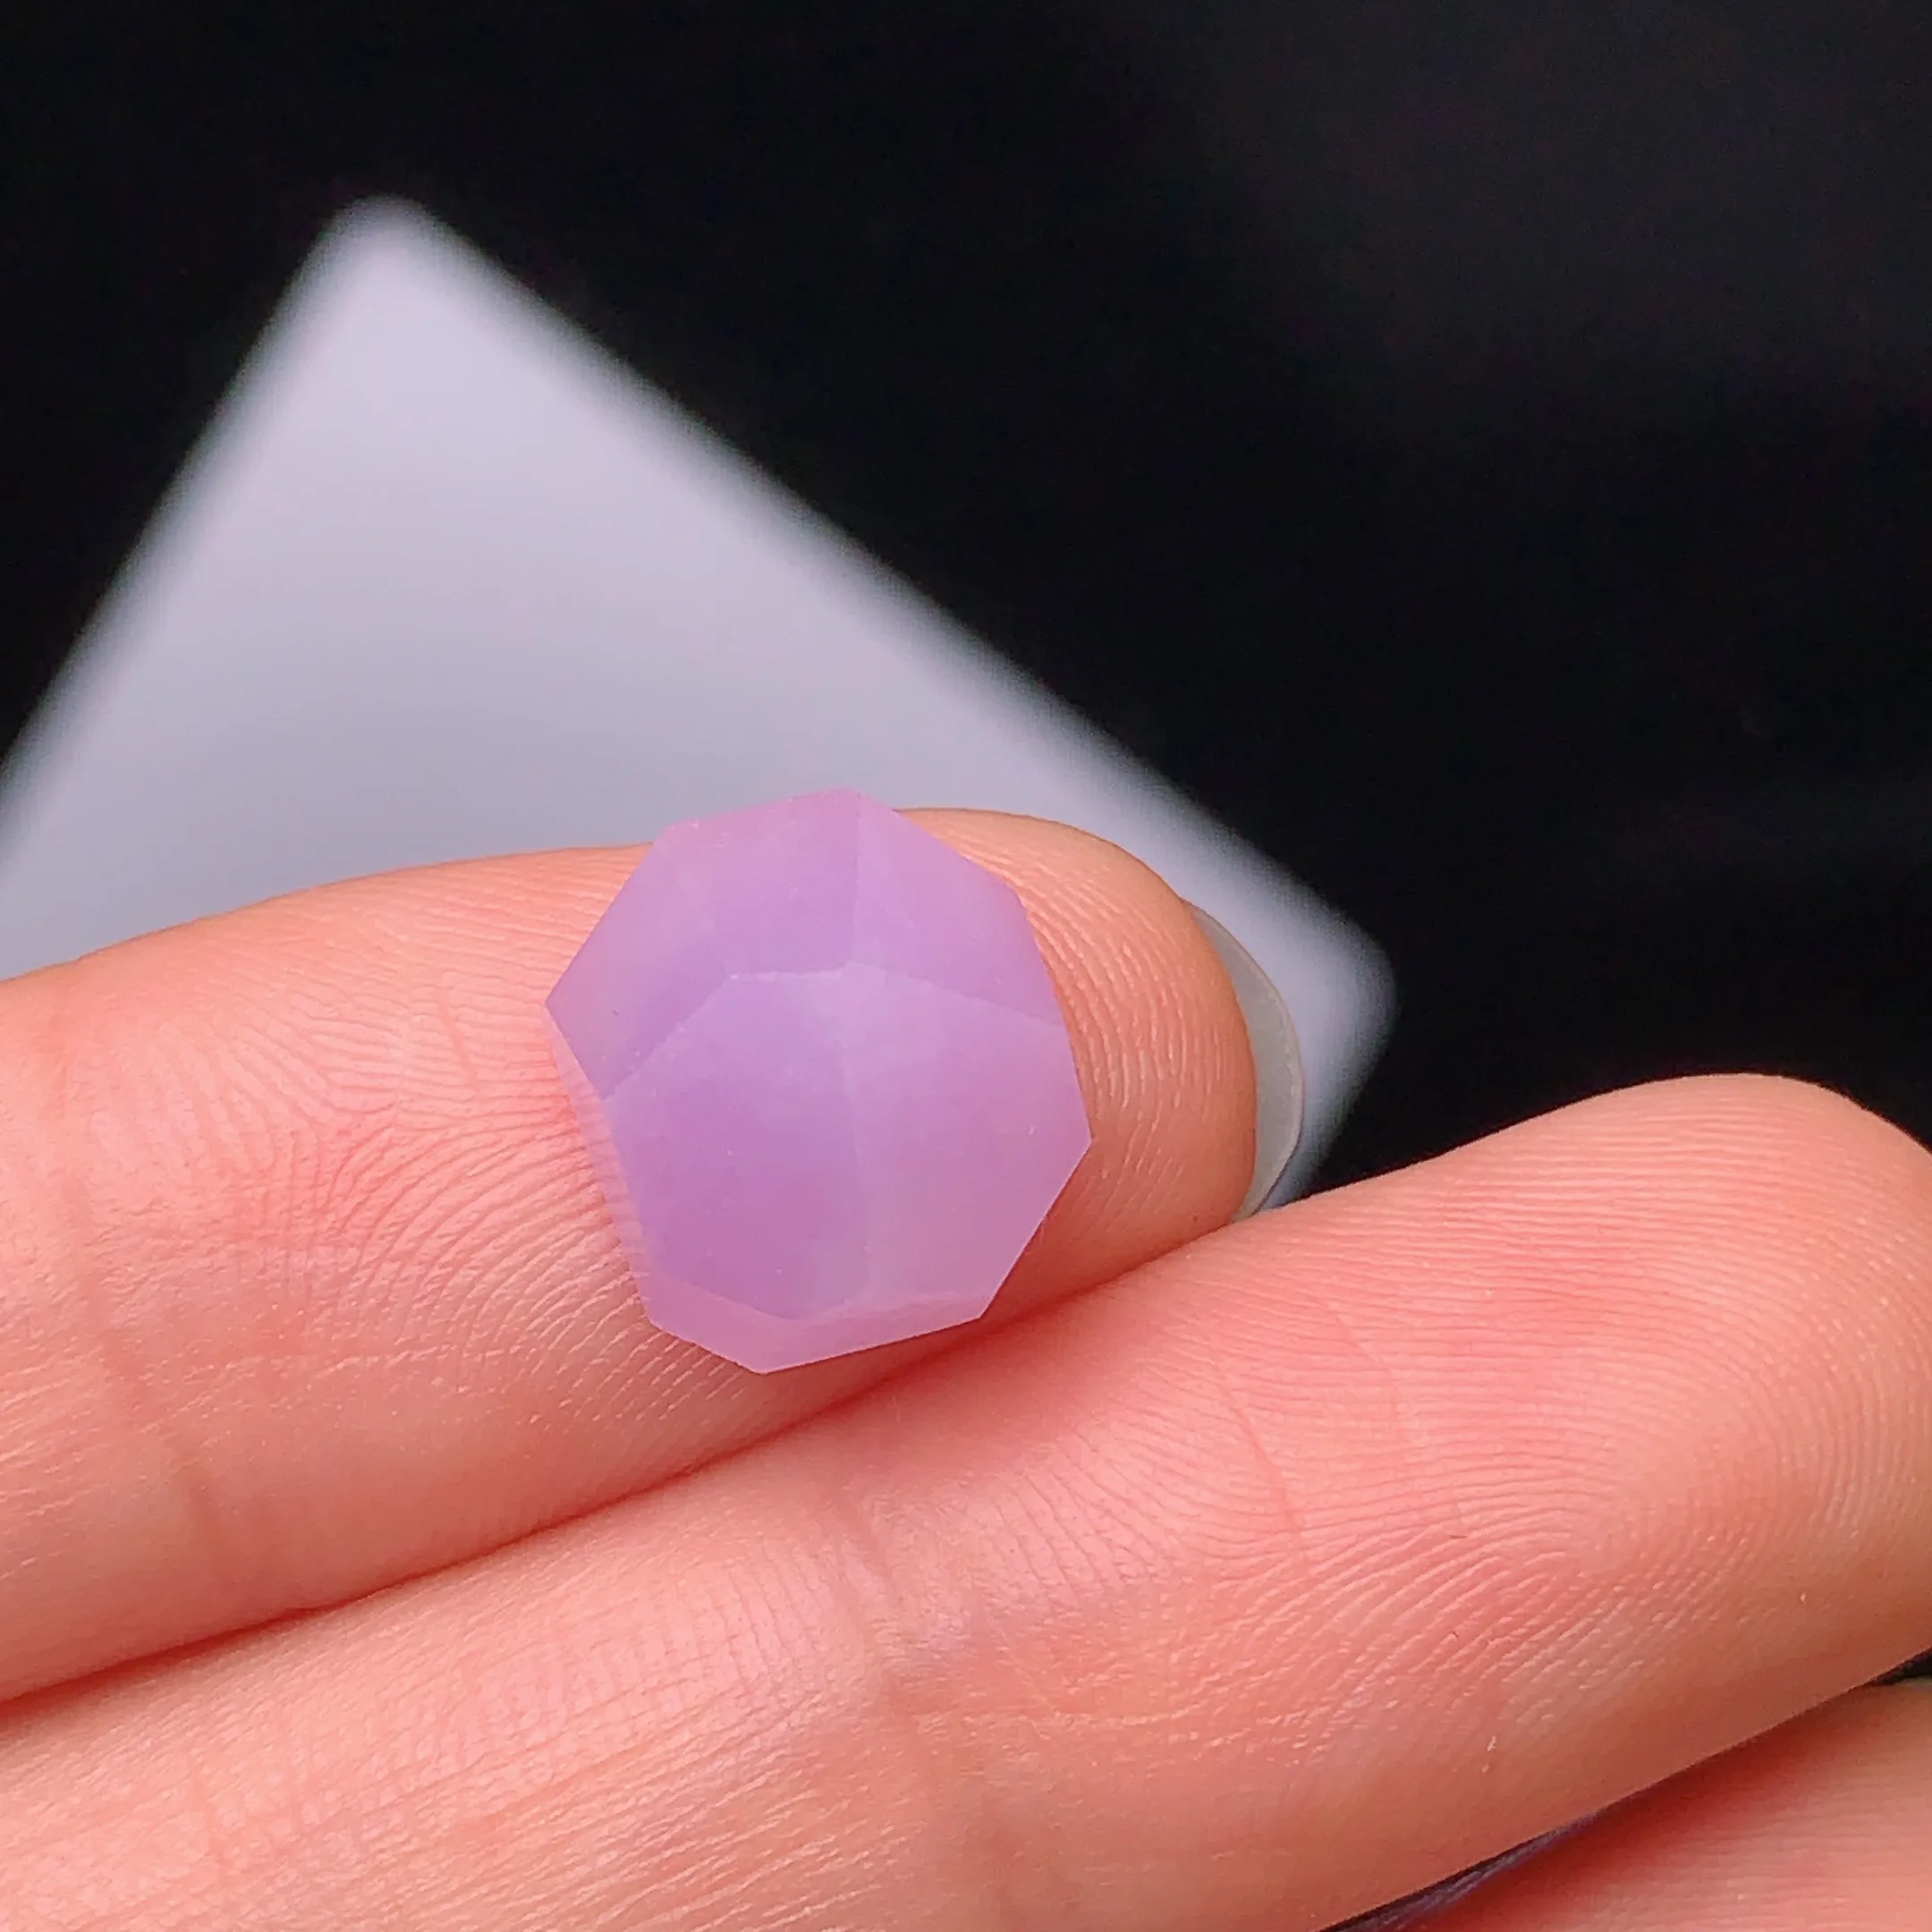 镶嵌款 紫罗兰菱形蛋面 玉质细腻 水润透亮 色泽艳丽 整体尺寸10.7*9.8*6.3